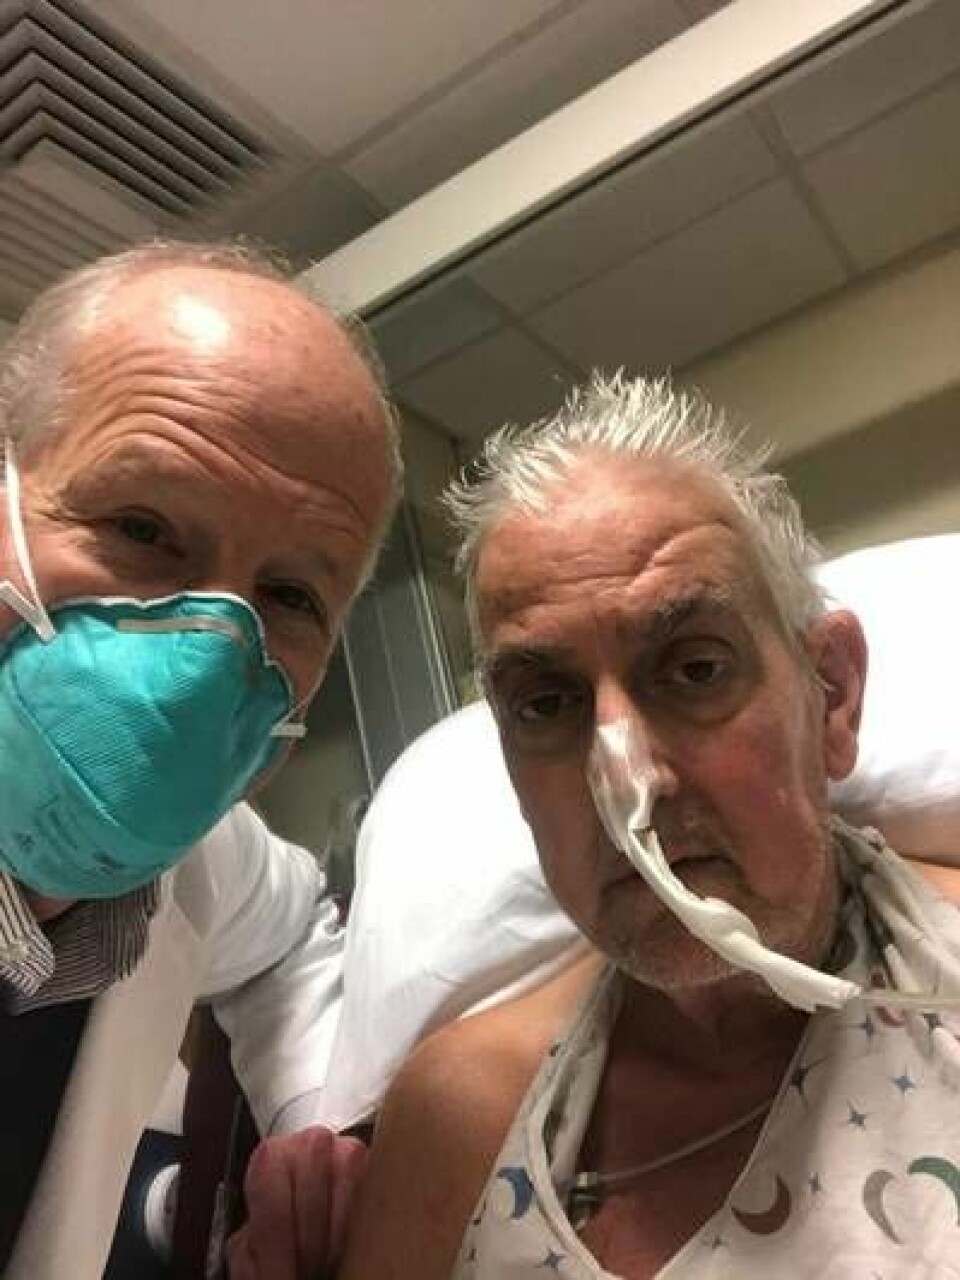 Kirurgen Barley Griffith tillsammans med David Bennett, som fick ett grishjärta inopererat i början av 2022. I mars gick David Bennett bort. Foto: TT/University Of Maryland/Zuma Press